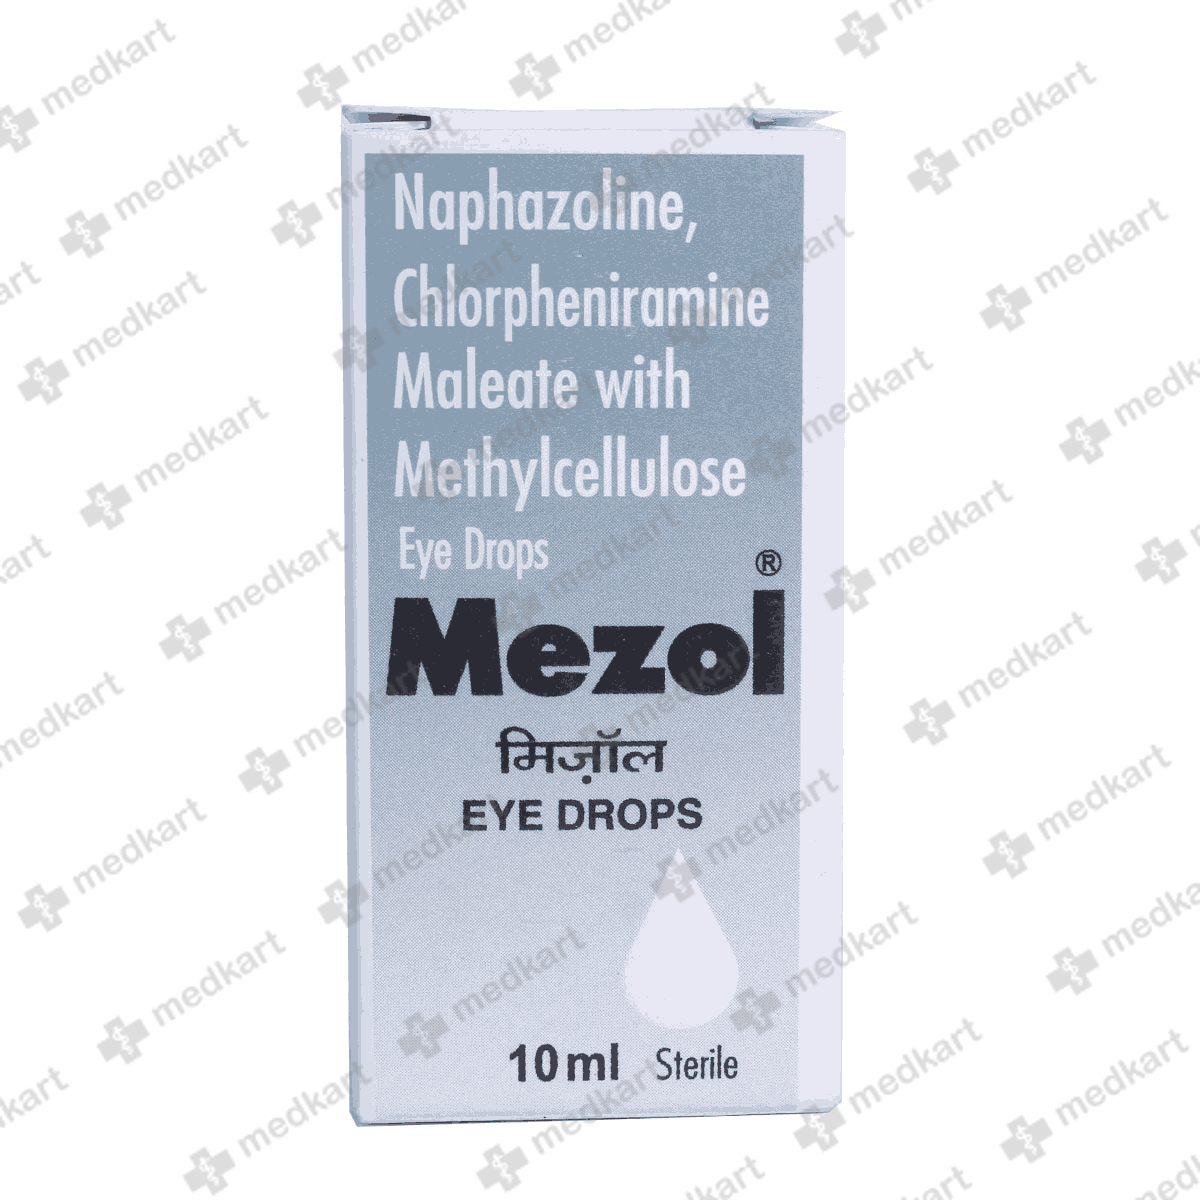 mezol-eye-drops-10-ml